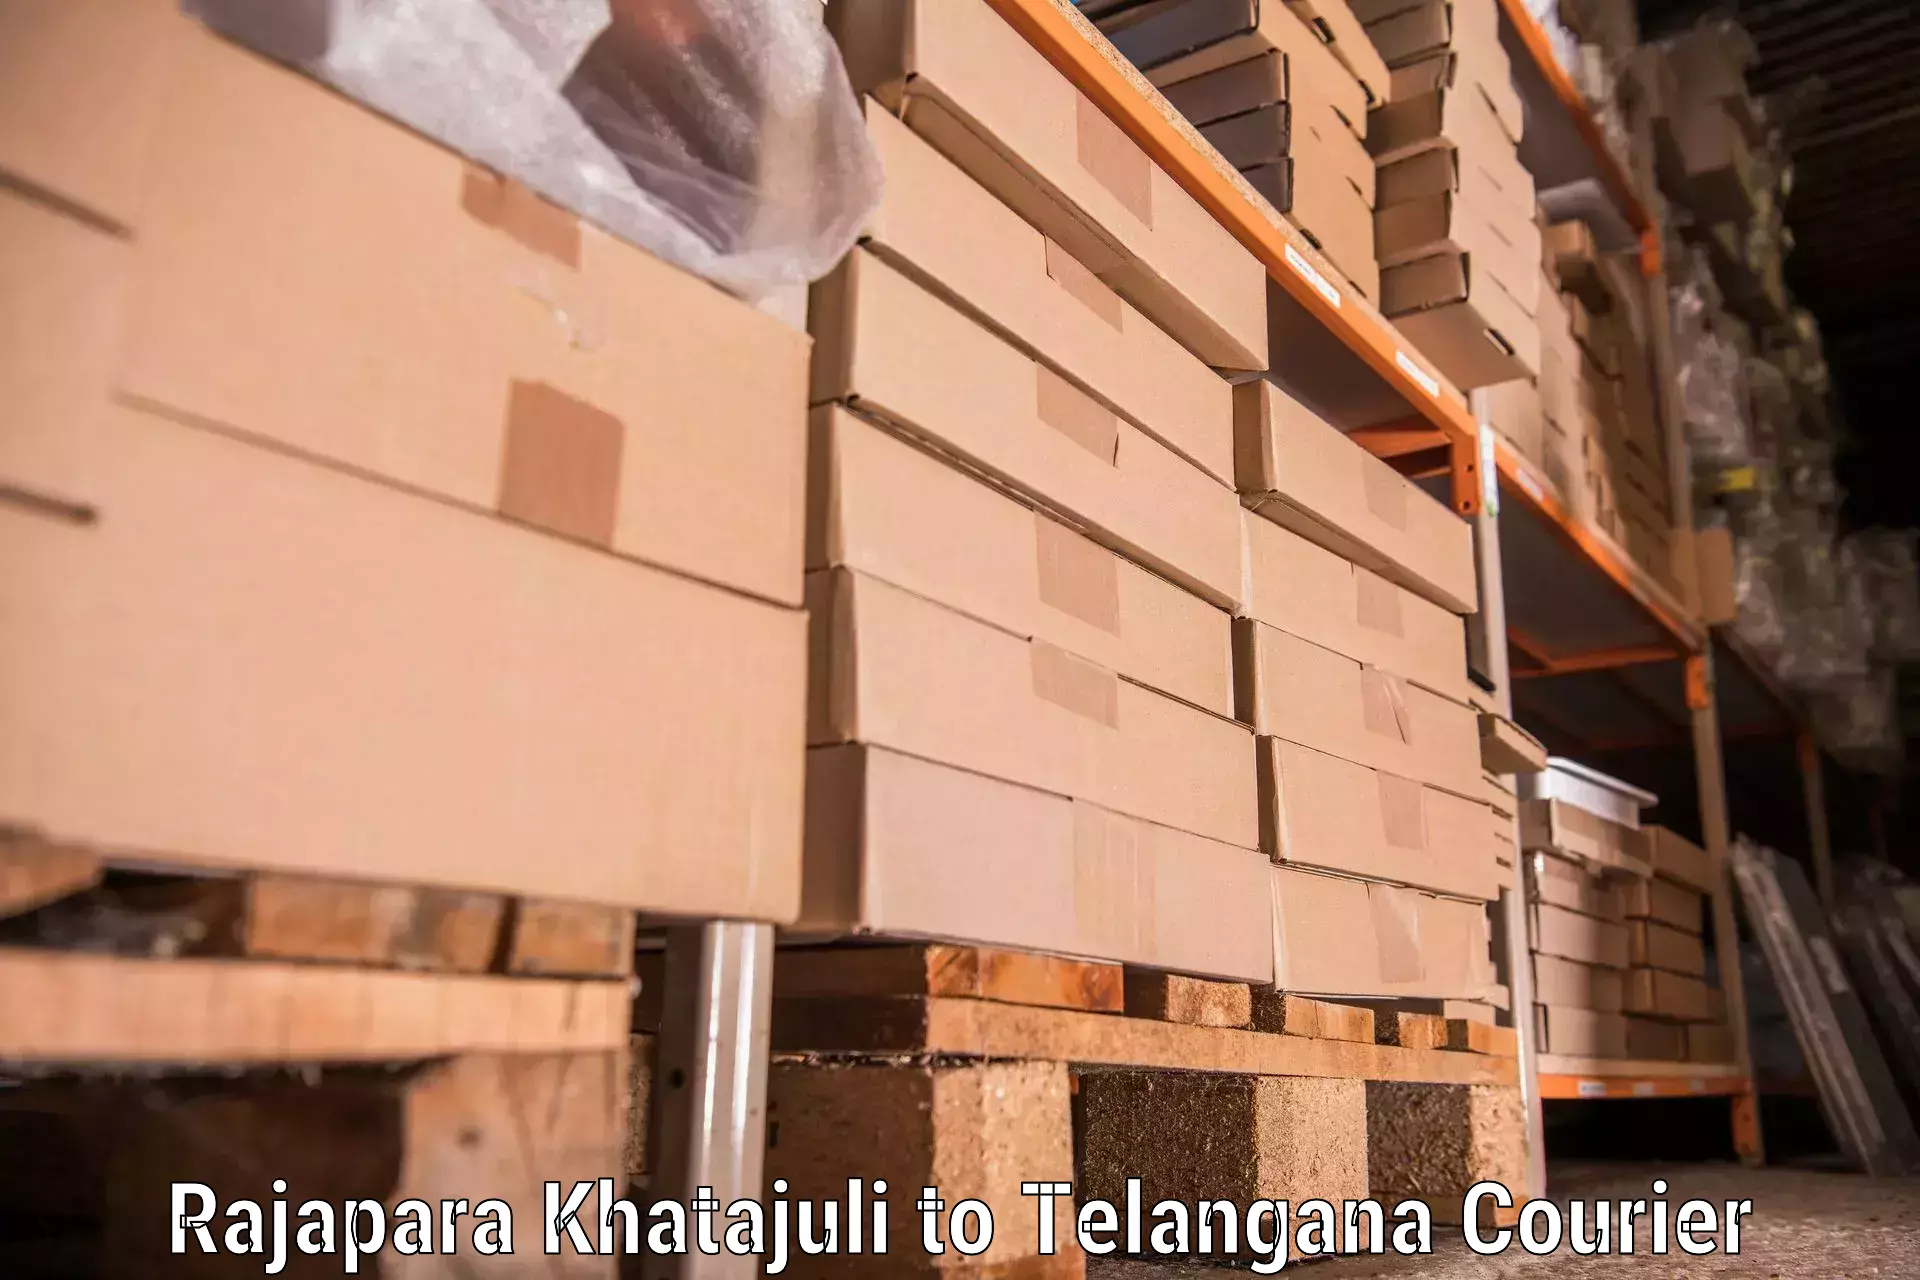 Furniture transport professionals Rajapara Khatajuli to Kothakota